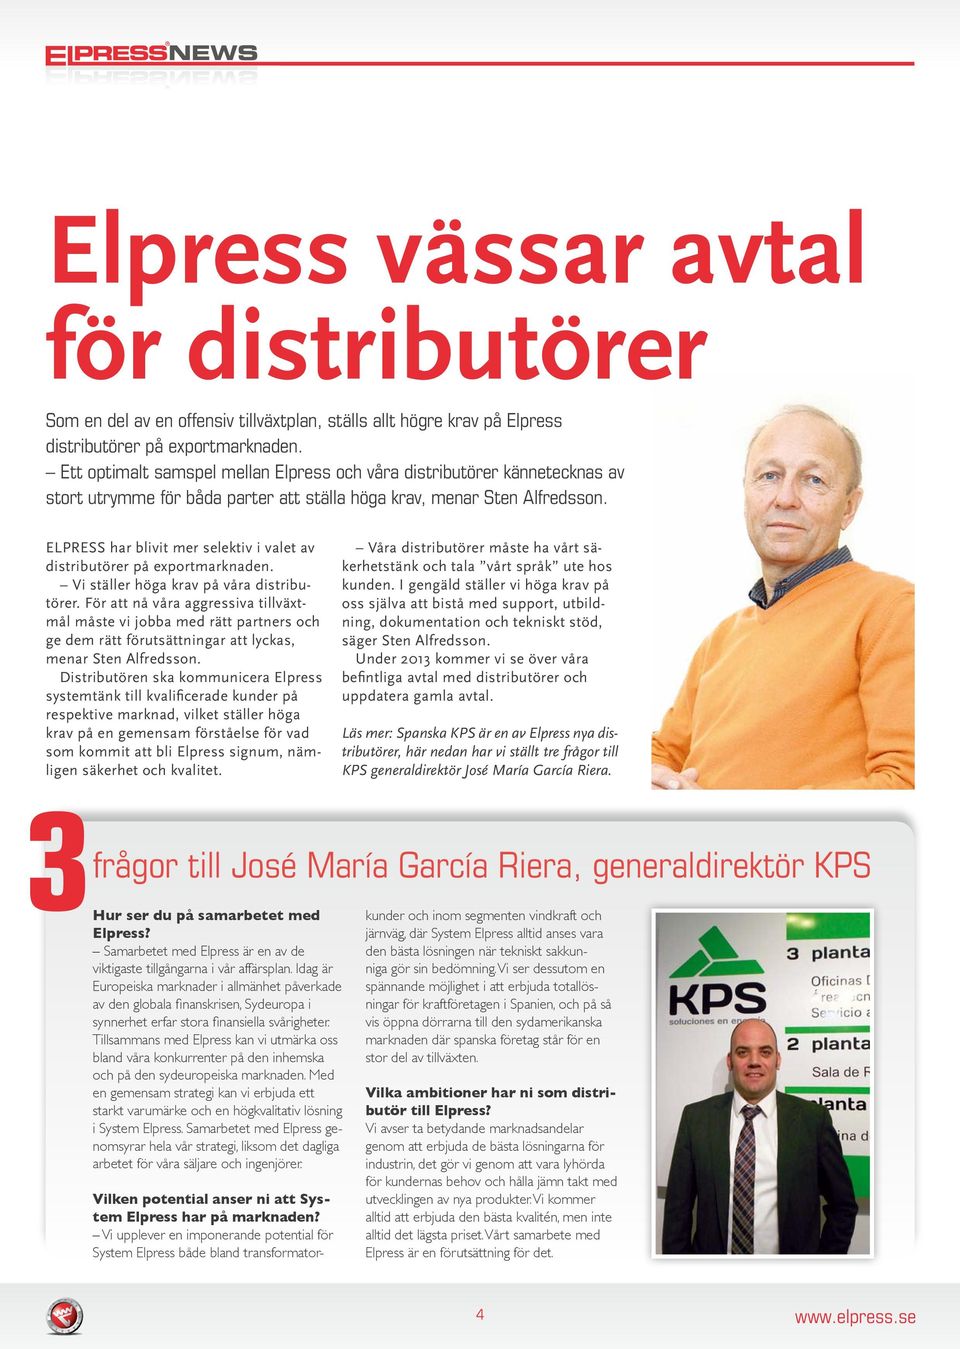 Elpress har blivit mer selektiv i valet av distributörer på exportmarknaden. Vi ställer höga krav på våra distributörer.